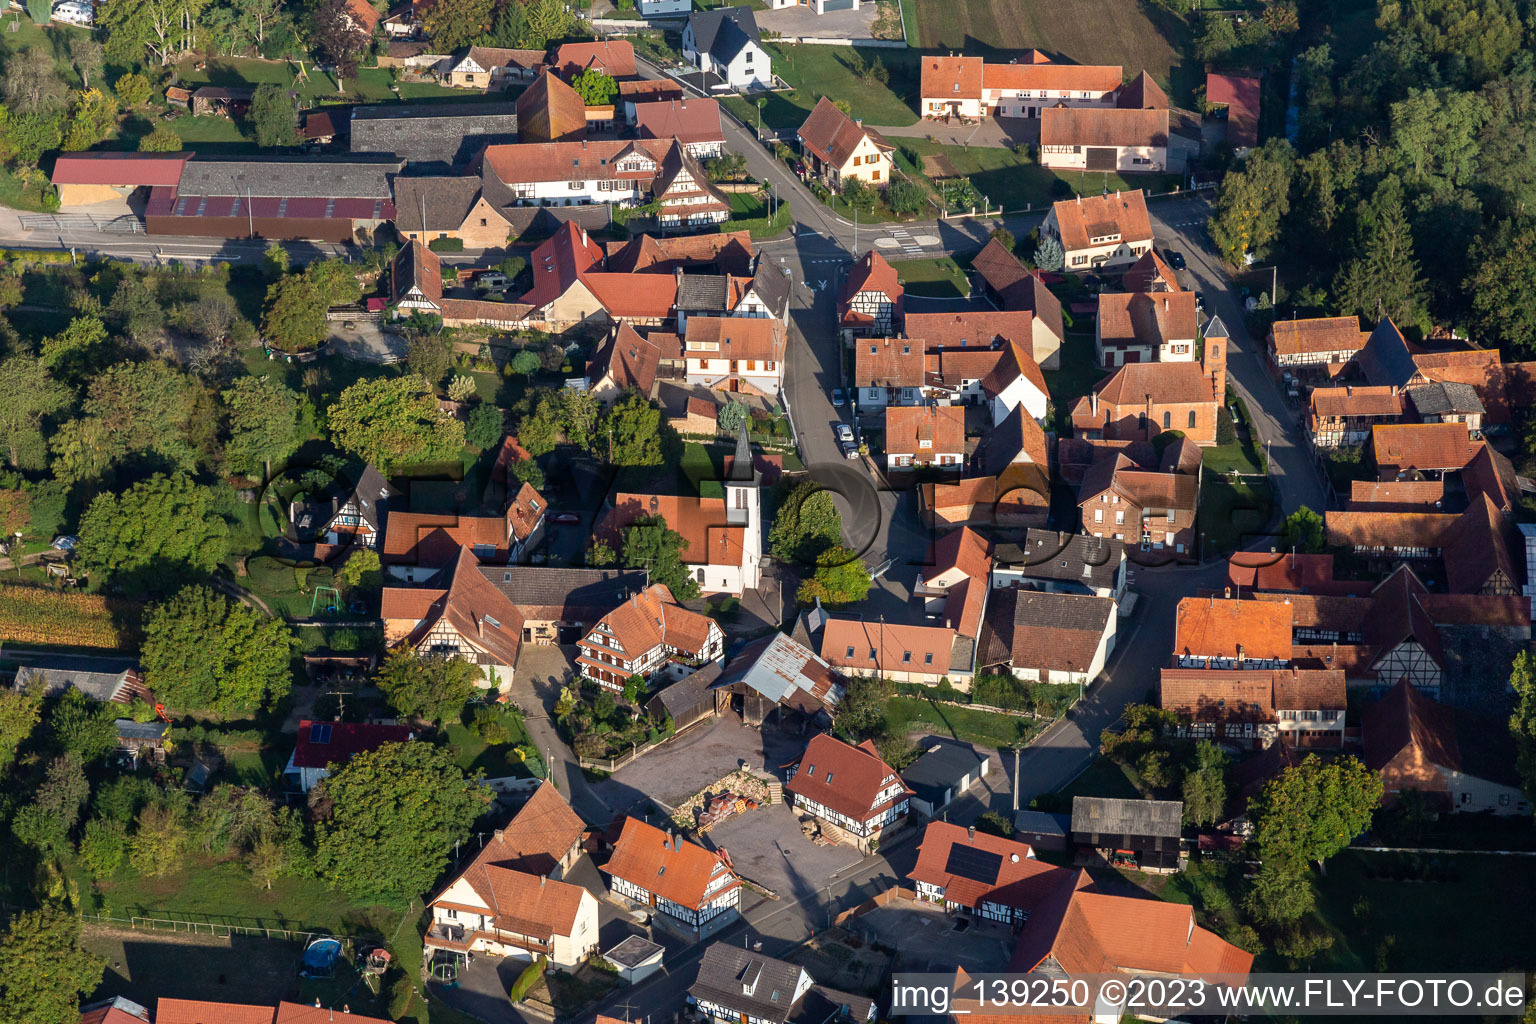 Ingolsheim im Bundesland Bas-Rhin, Frankreich aus der Luft betrachtet